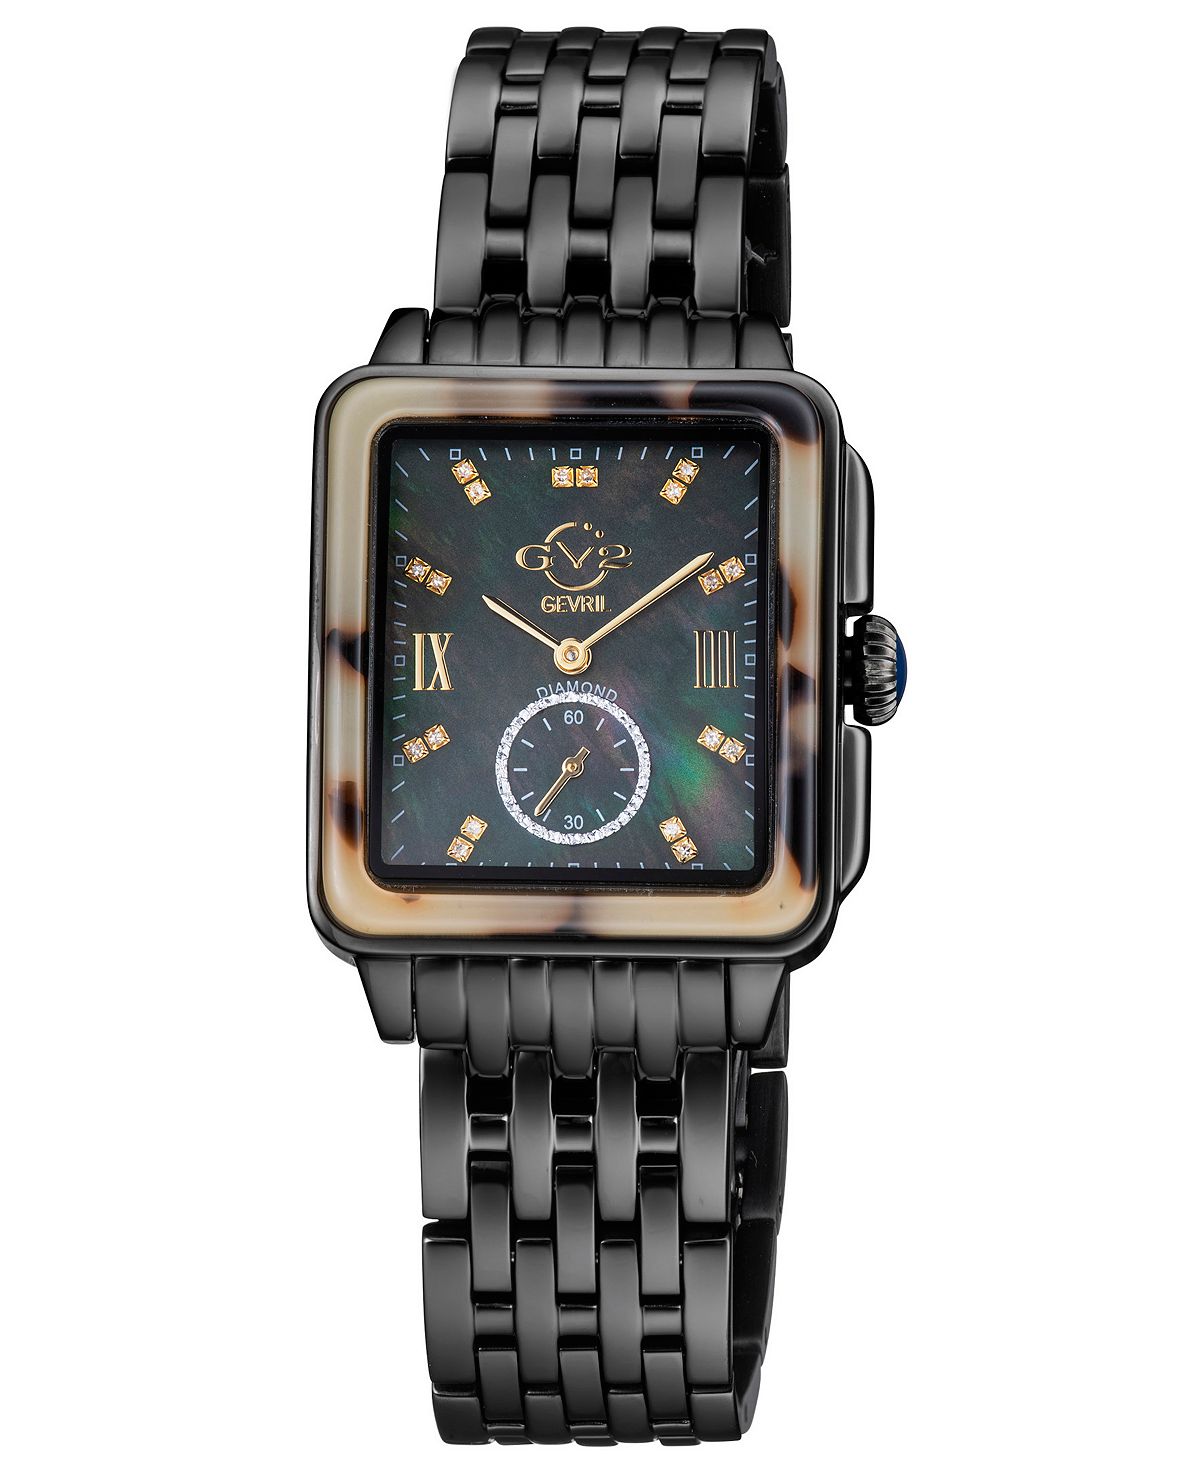 Женские часы Bari Tortoise, швейцарские кварцевые черные часы из нержавеющей стали, 30 x 34 мм GV2 by Gevril, черный